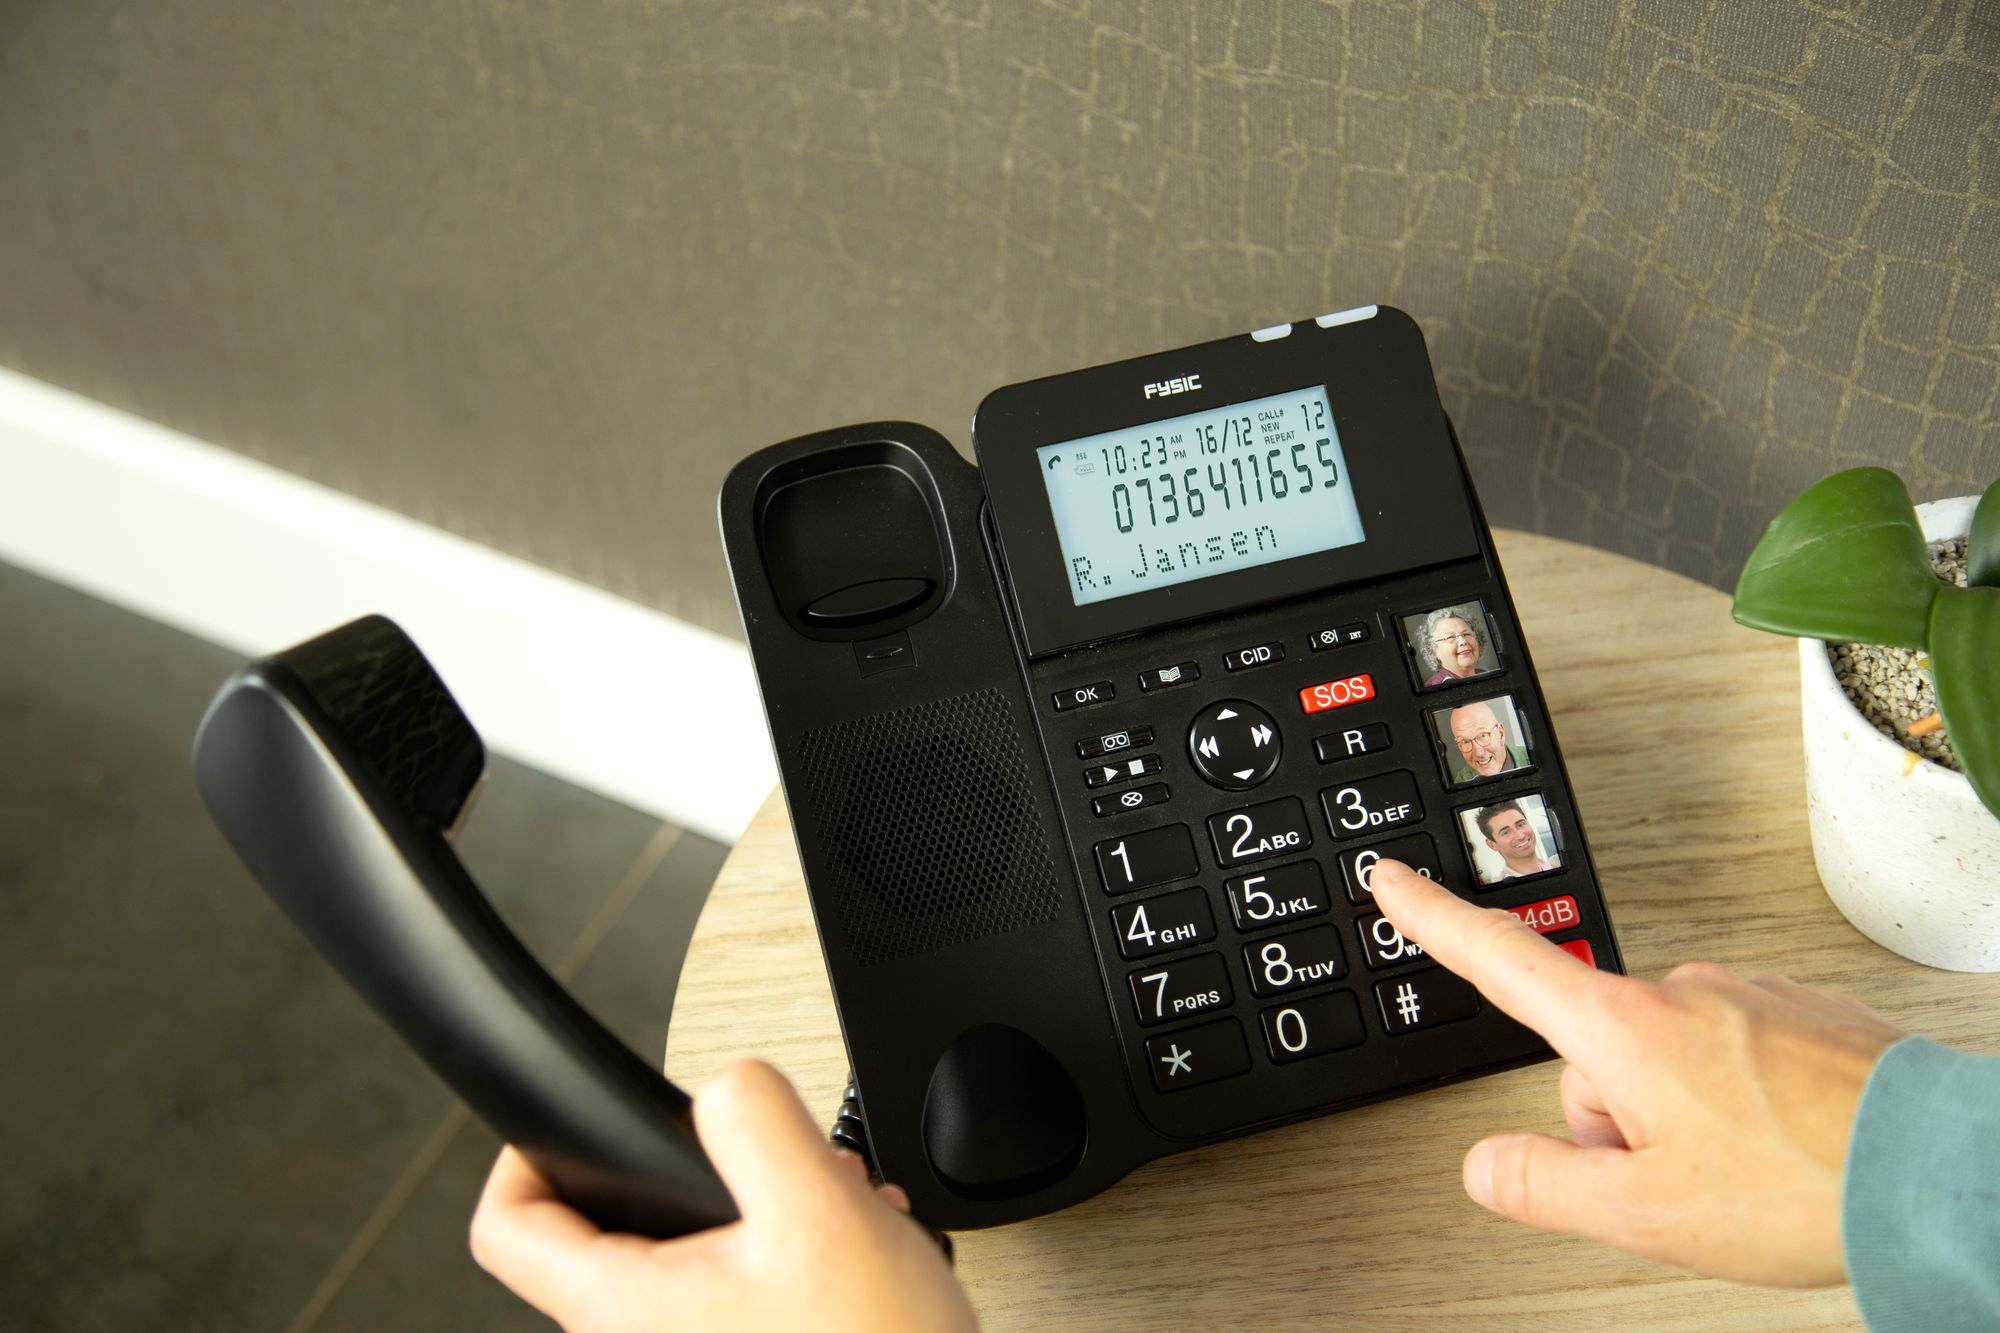 FYSIC FX-8025 - extra und Handset Seniorentelefon mit Tasten,SOS-Taste Klingelverstärker mit Seniorentelefon Klingelverstärker,großen